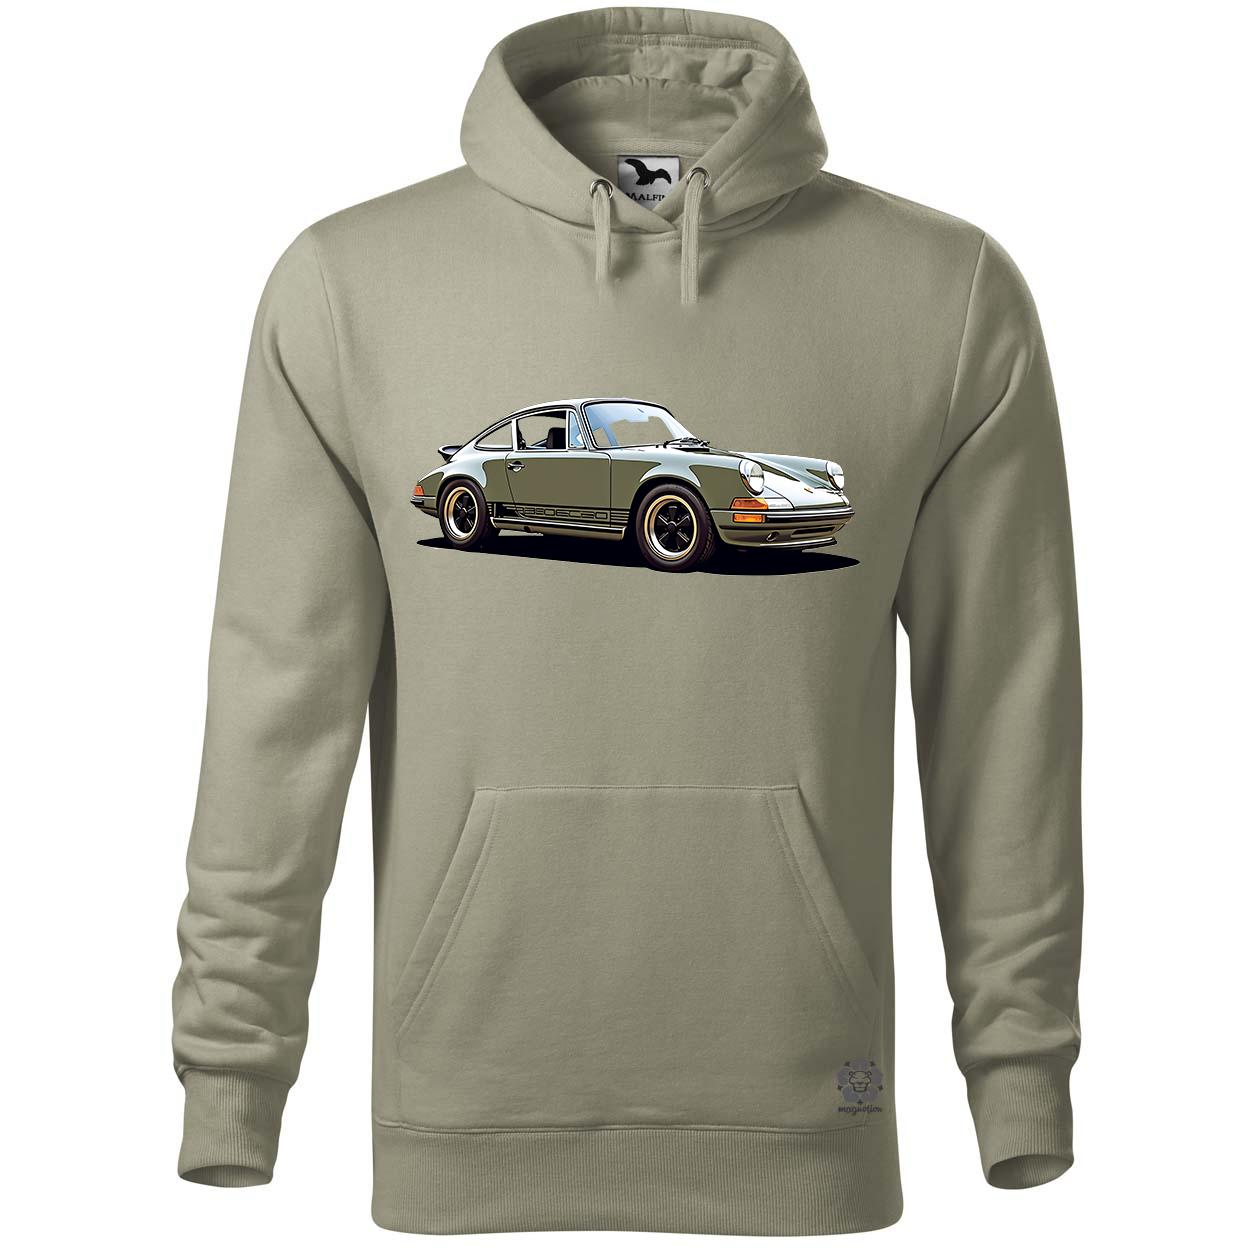 Porsche 911 rajz v2